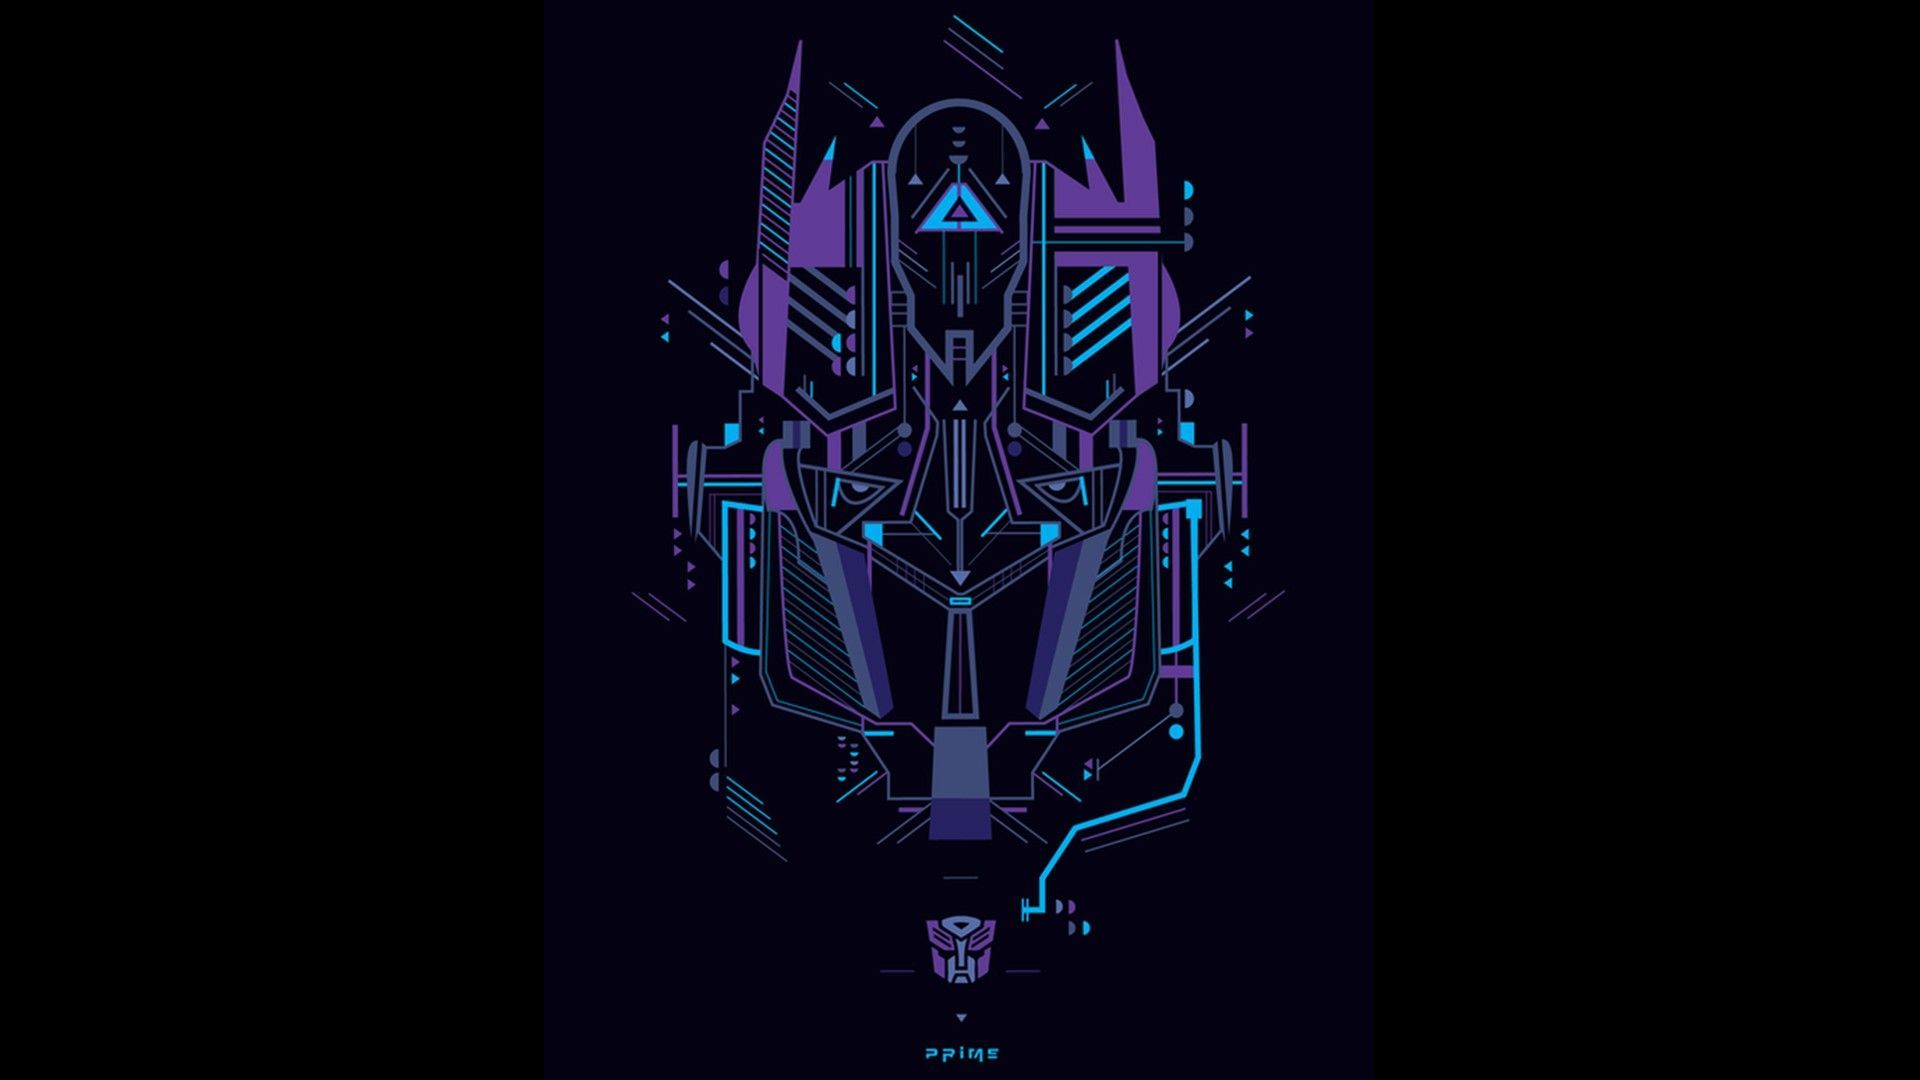 Transformers HD Wallpaper | 1920x1080 | ID:35307